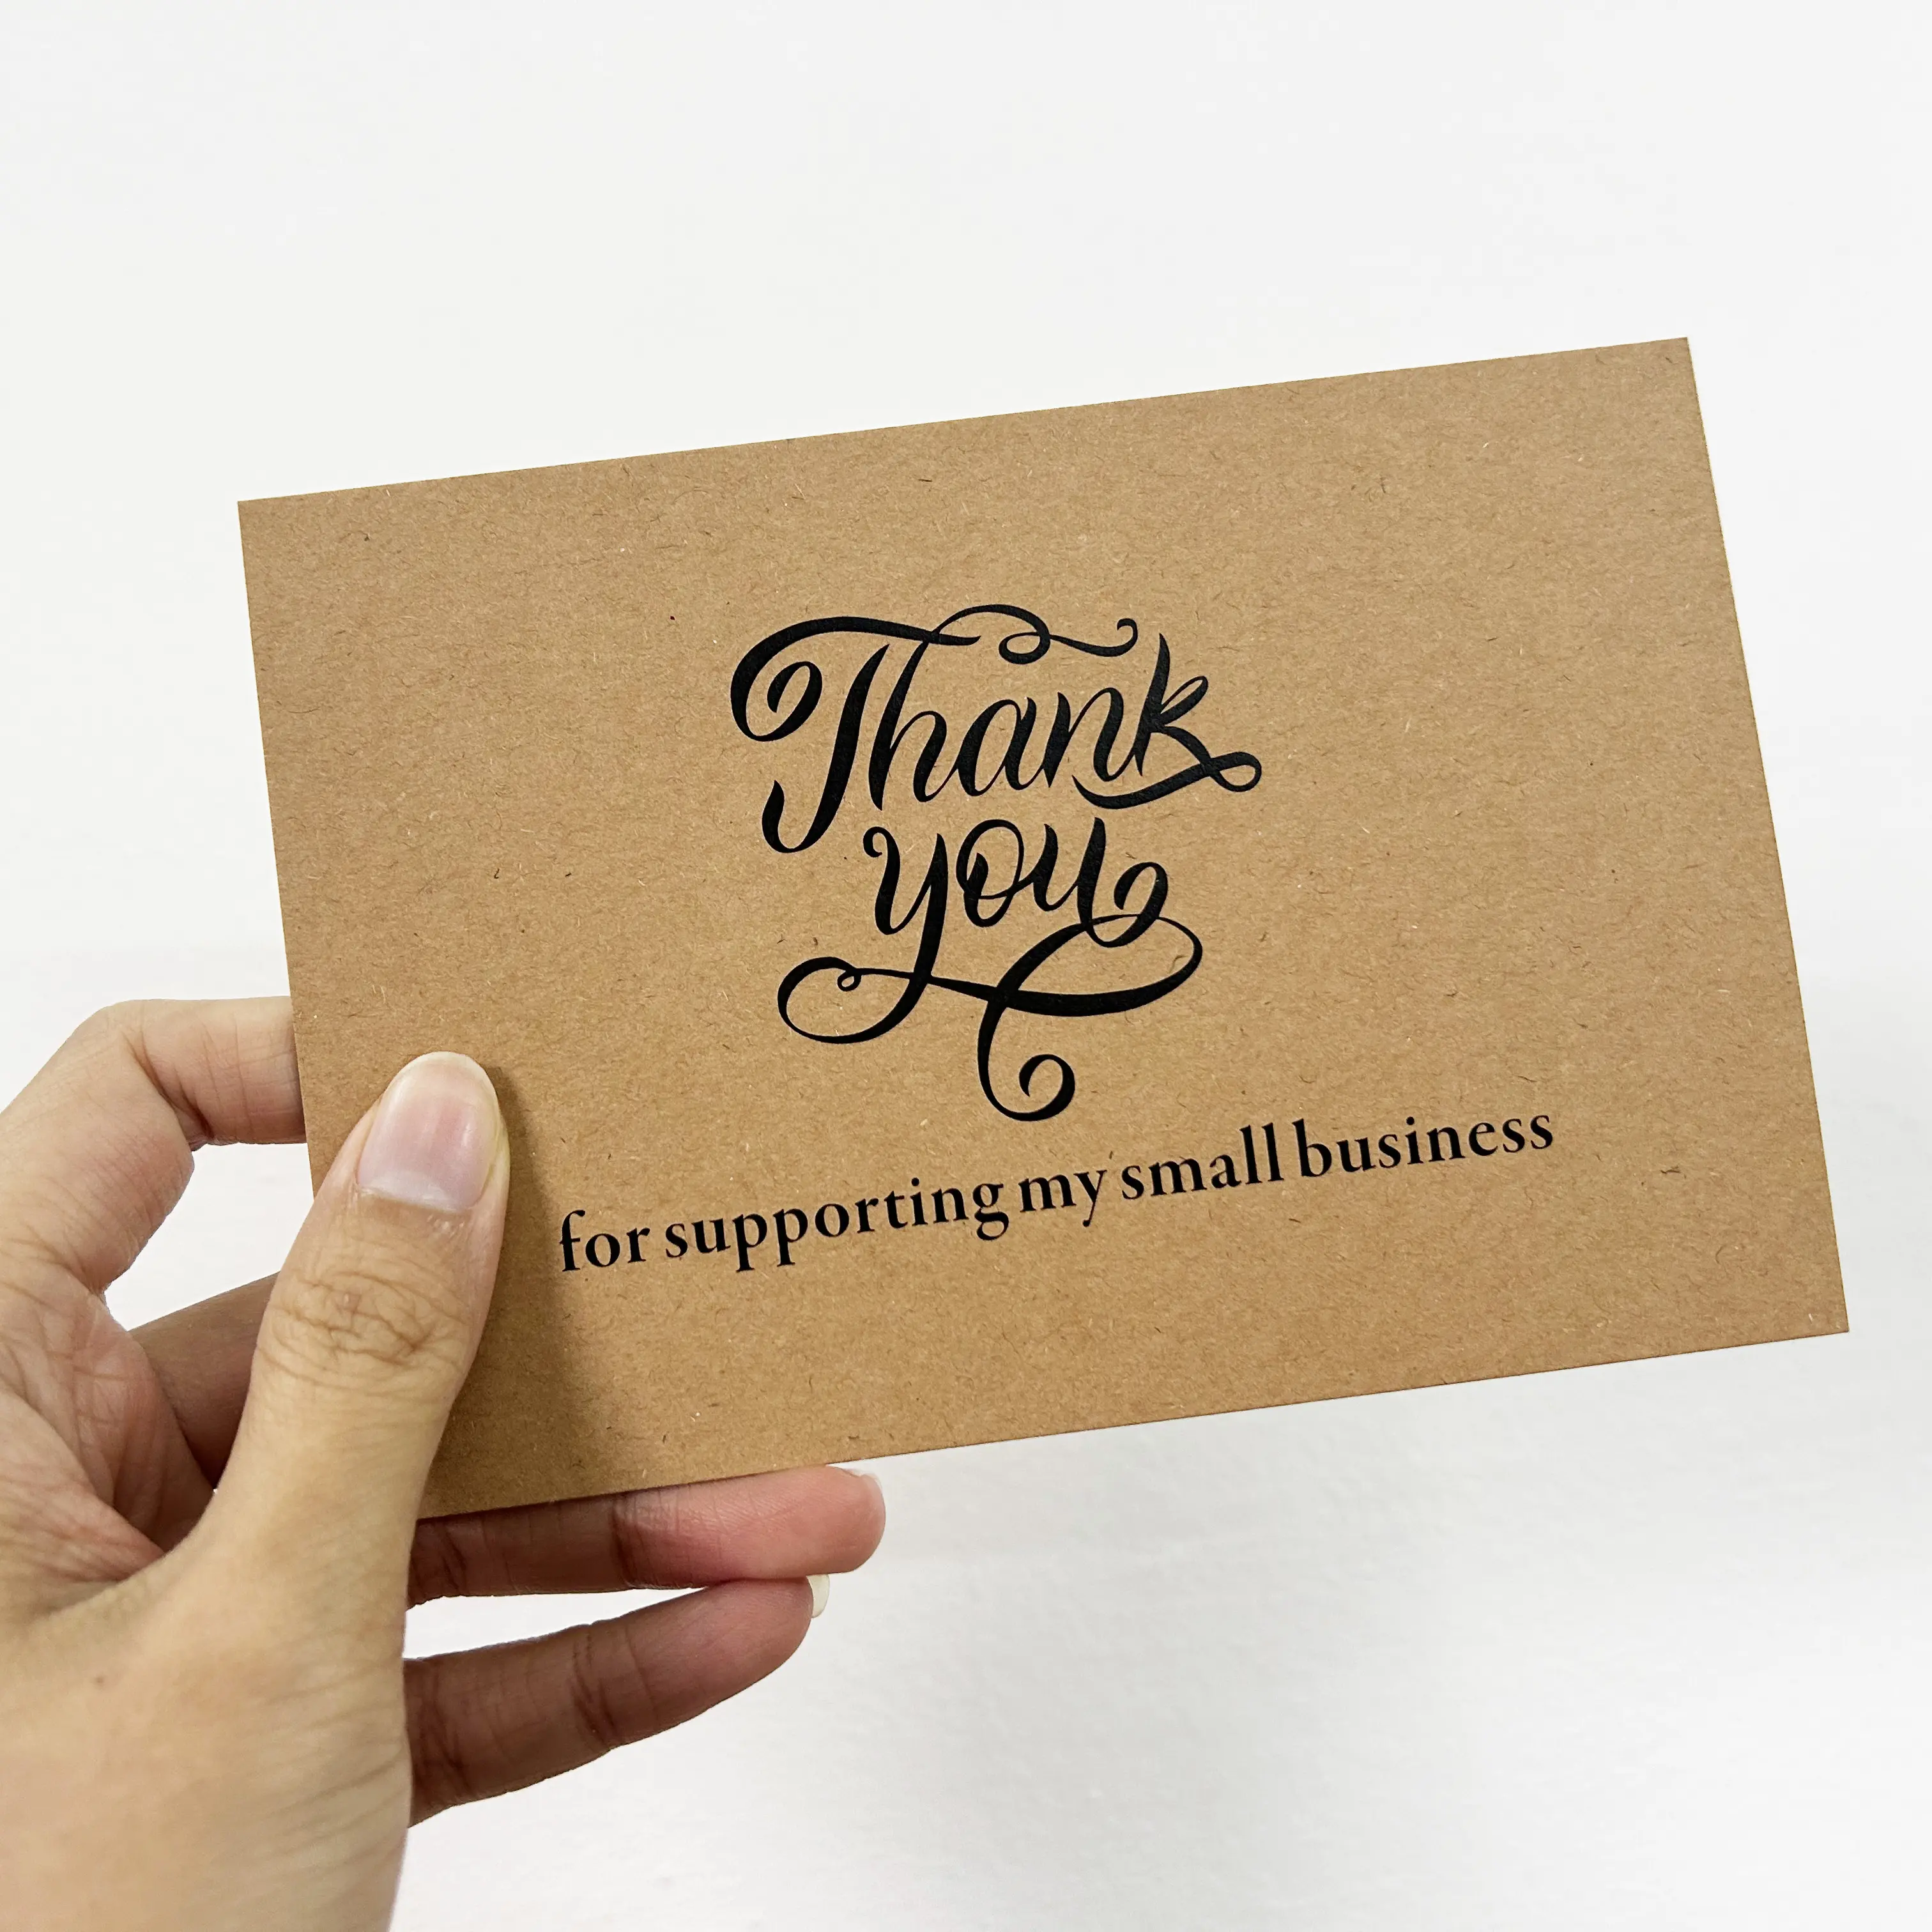 Крафт-бумага благодарственная открытка Спасибо за заказ мелкий бизнес отзывы магазин подарочная упаковка крафт-бумага